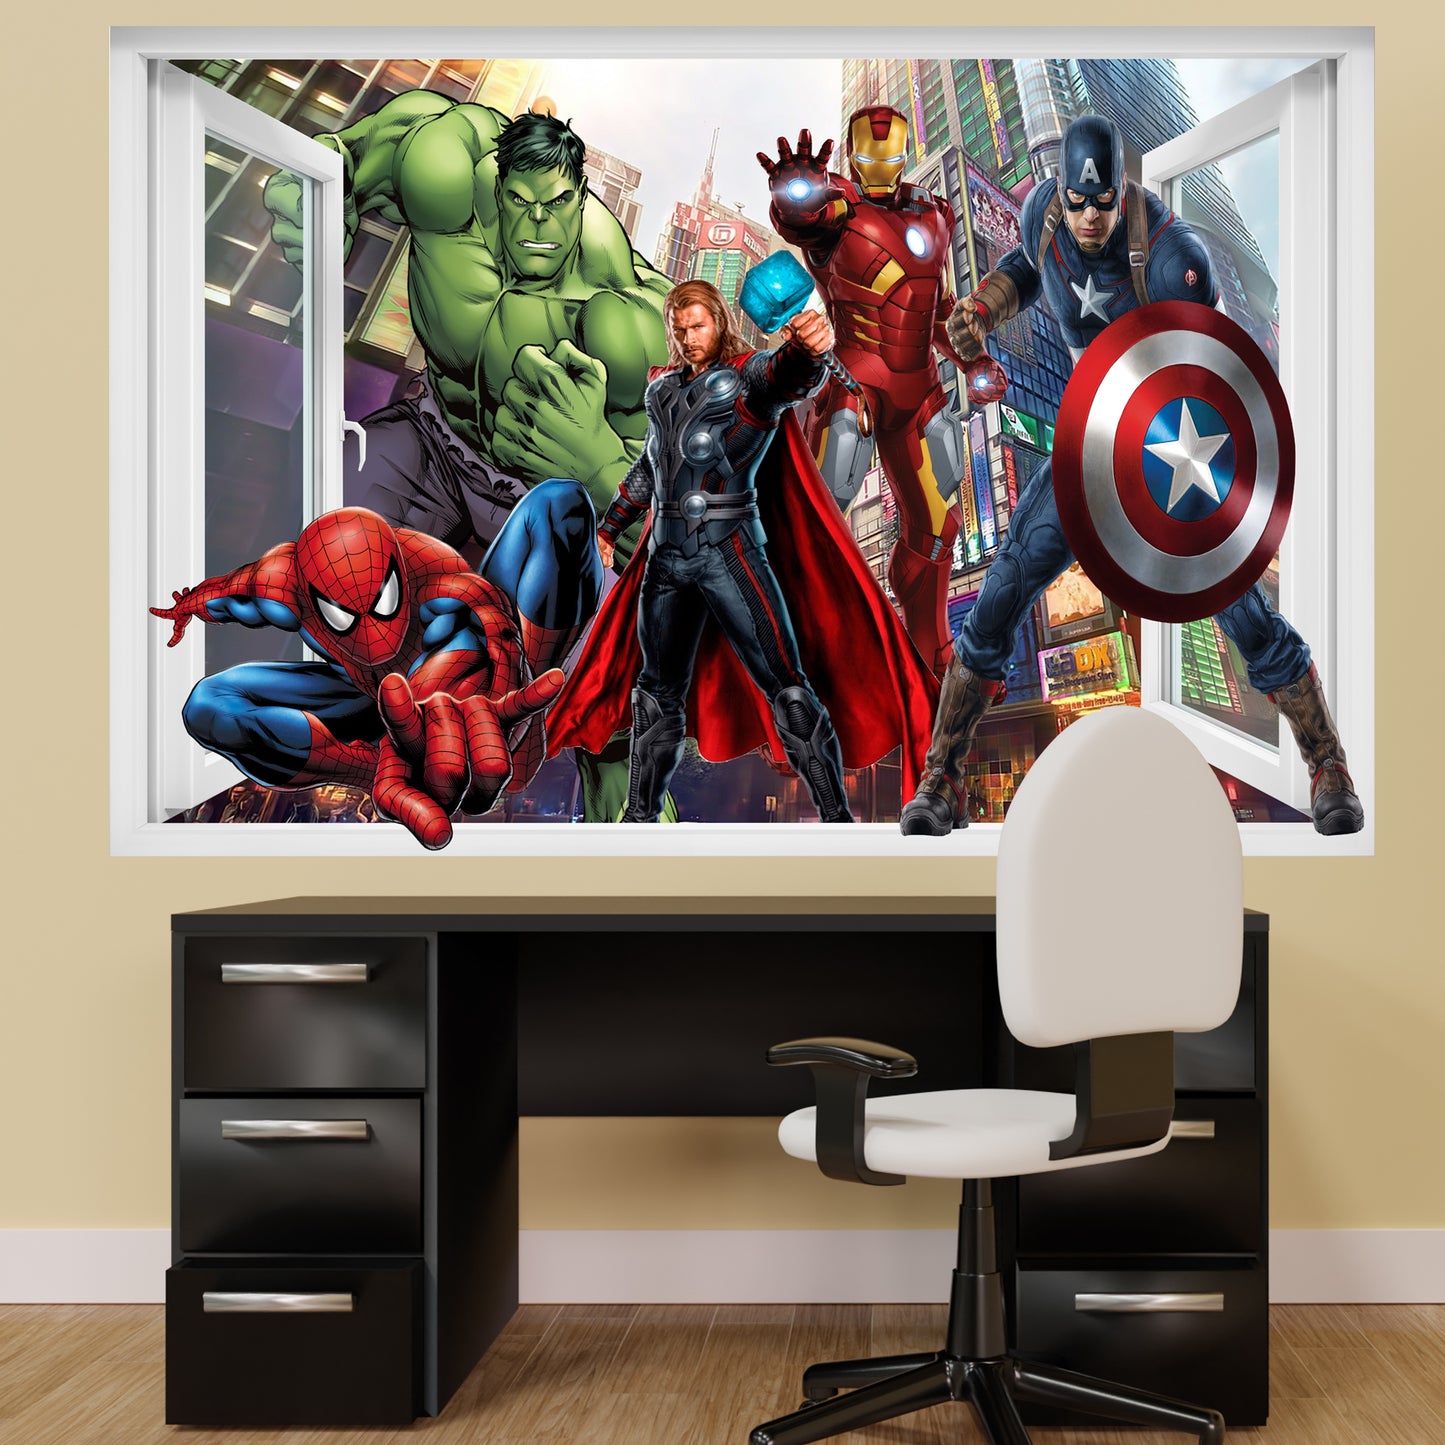 marvel avengers bedroom decor sticker